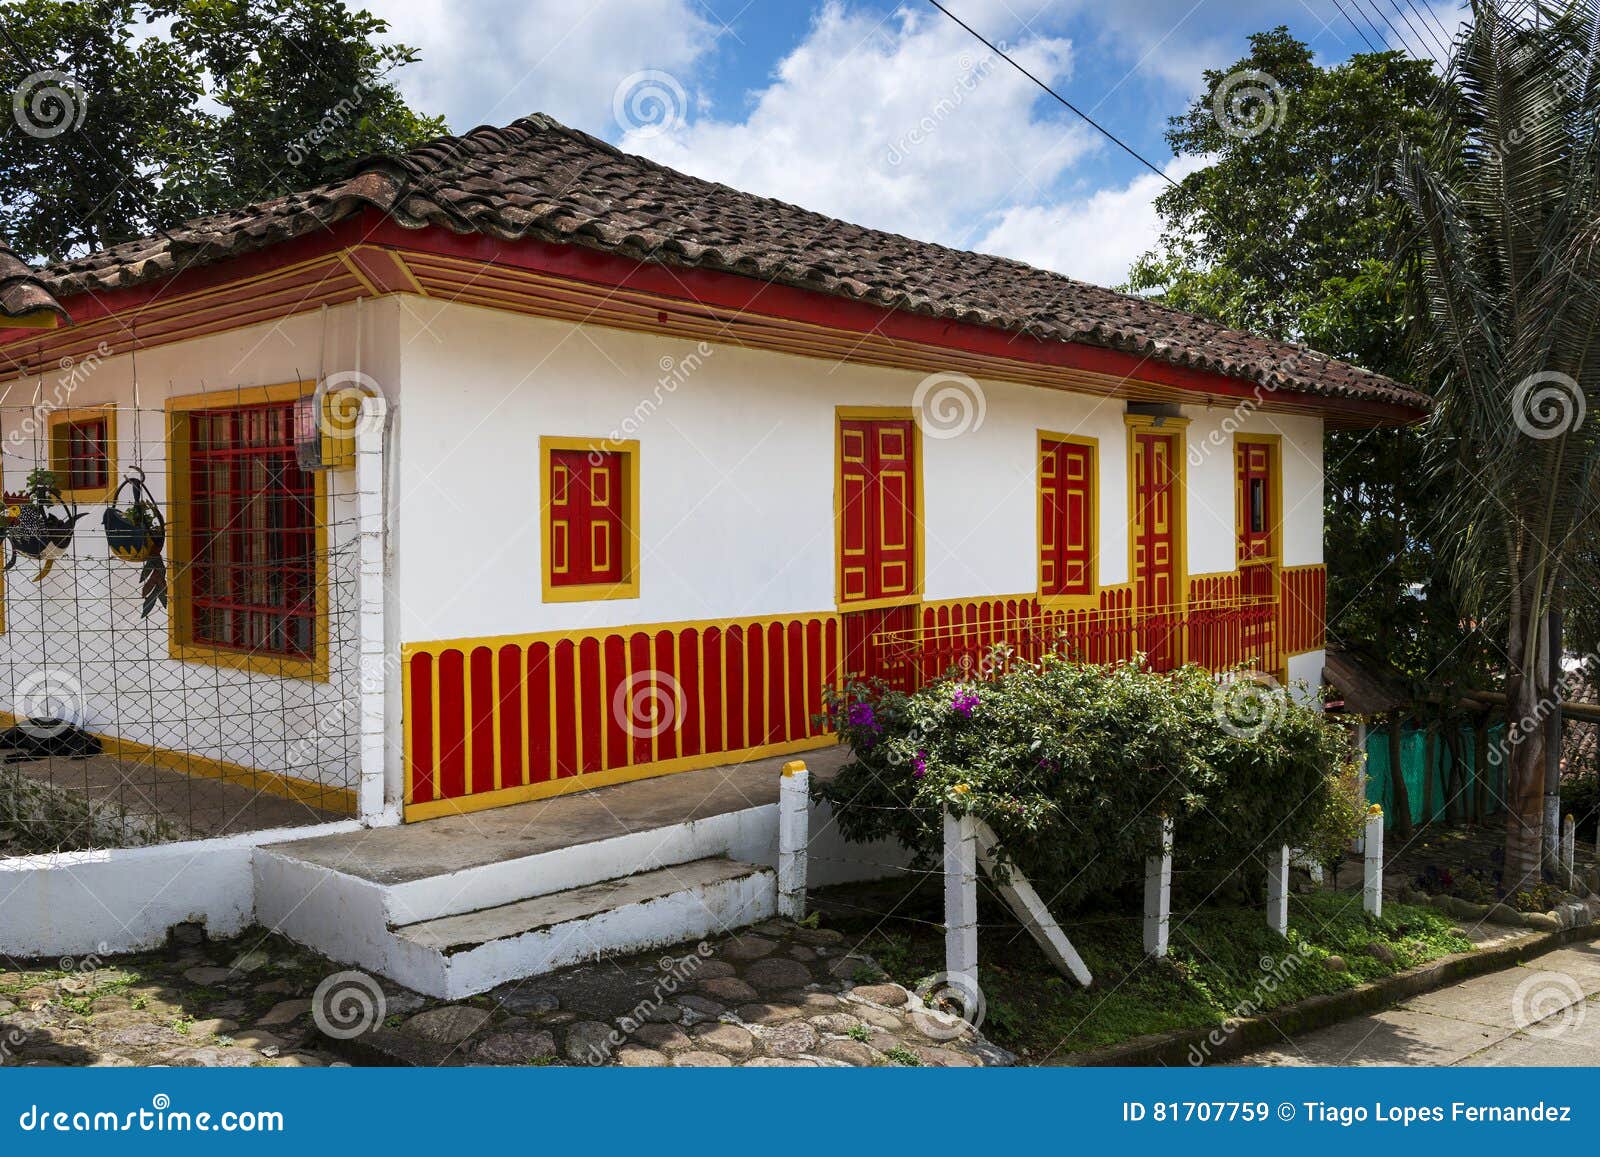 Casa Colonial Tradicional, Pintada En Colores Brillantes, En La Ciudad De  Salento, En Colombia Imagen de archivo - Imagen de explorar, tradicional:  81707759